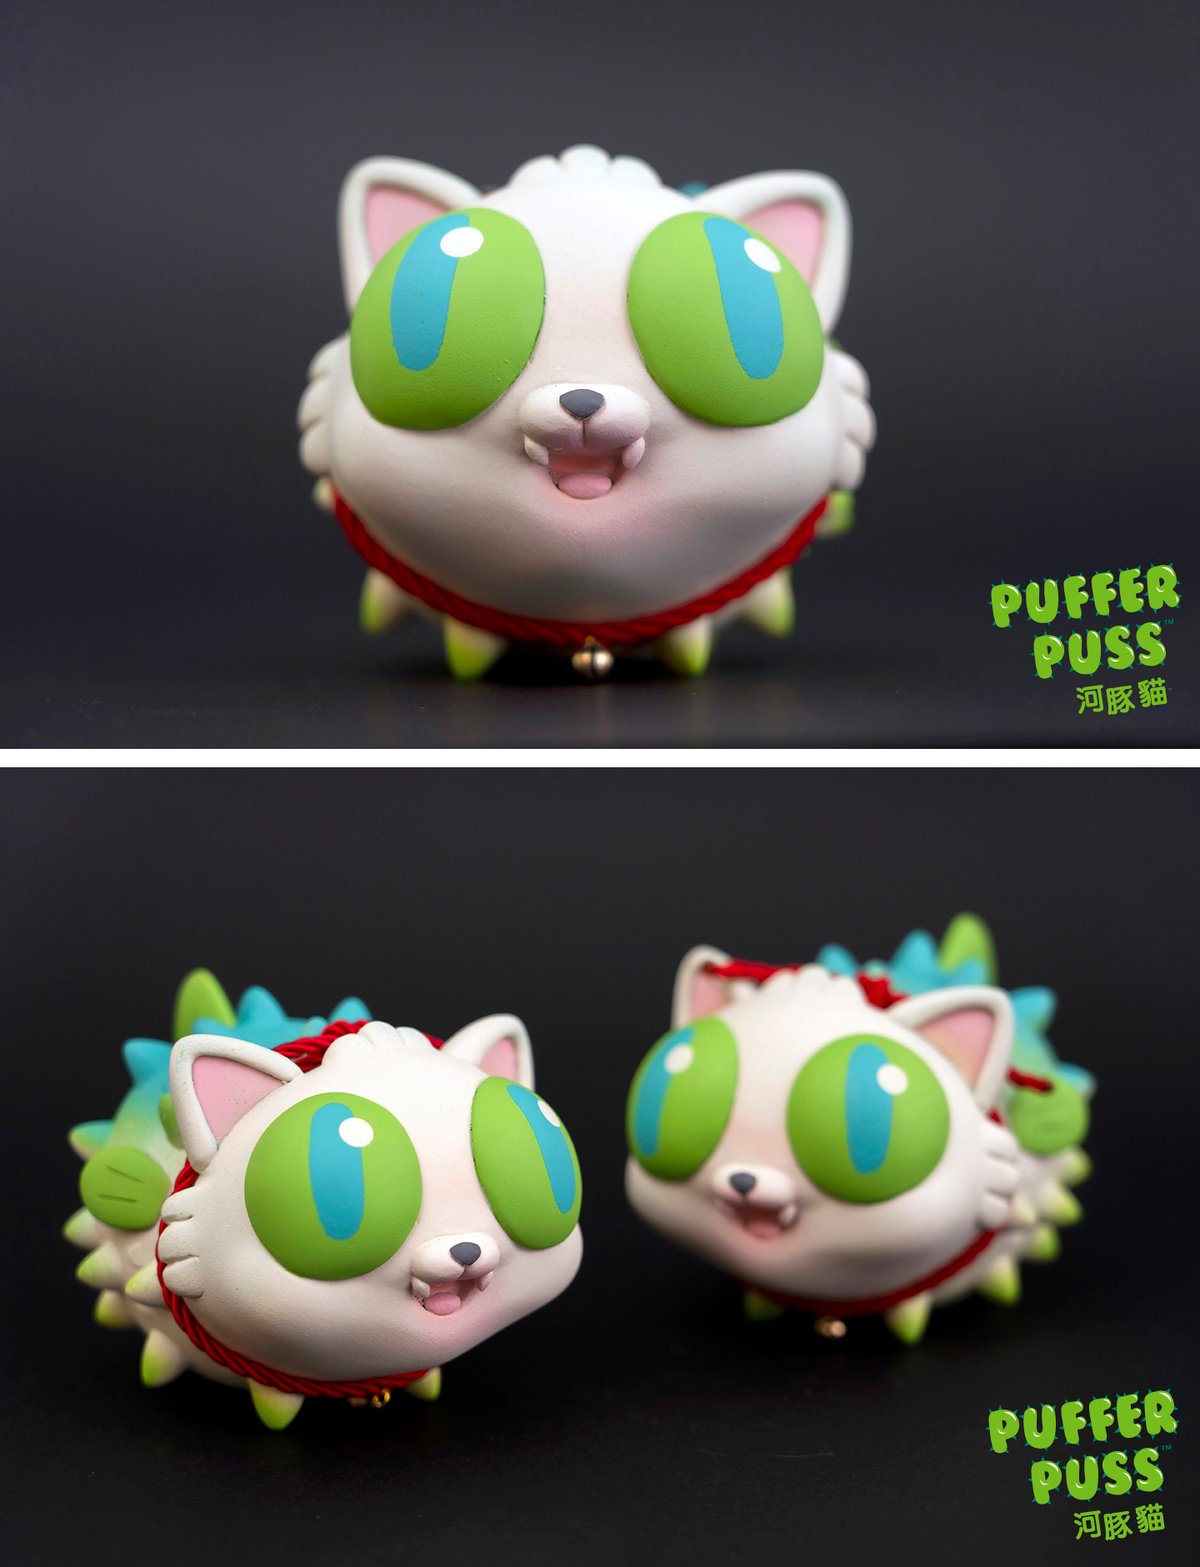 Puffer Puss Limited Edition Handmade Sculpture 